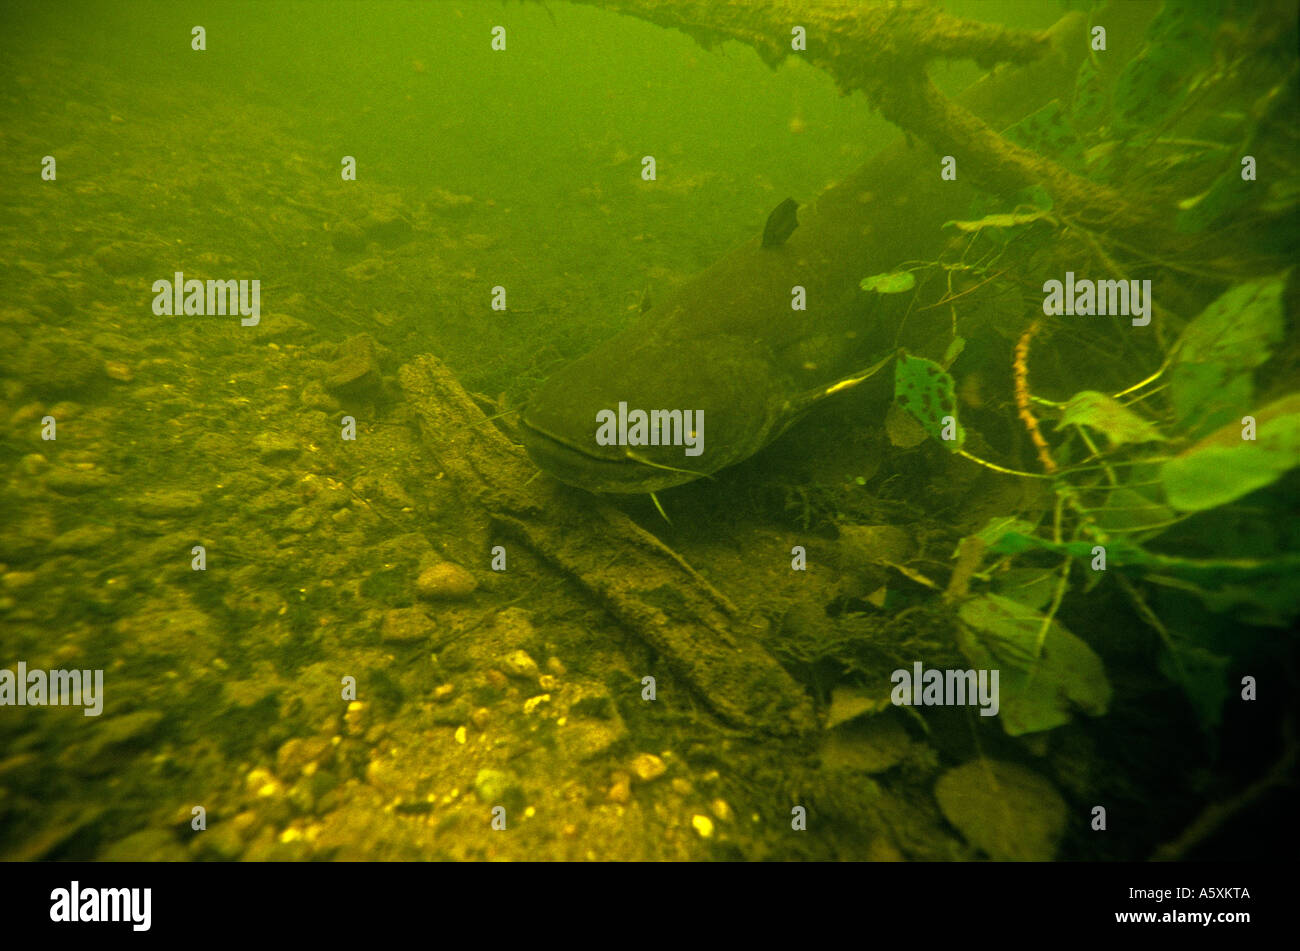 European Wels (Silurus glanis) dans la rivière La Creuse (France). Silure glane (Silurus glanis) dans la rivière La Creuse. Banque D'Images